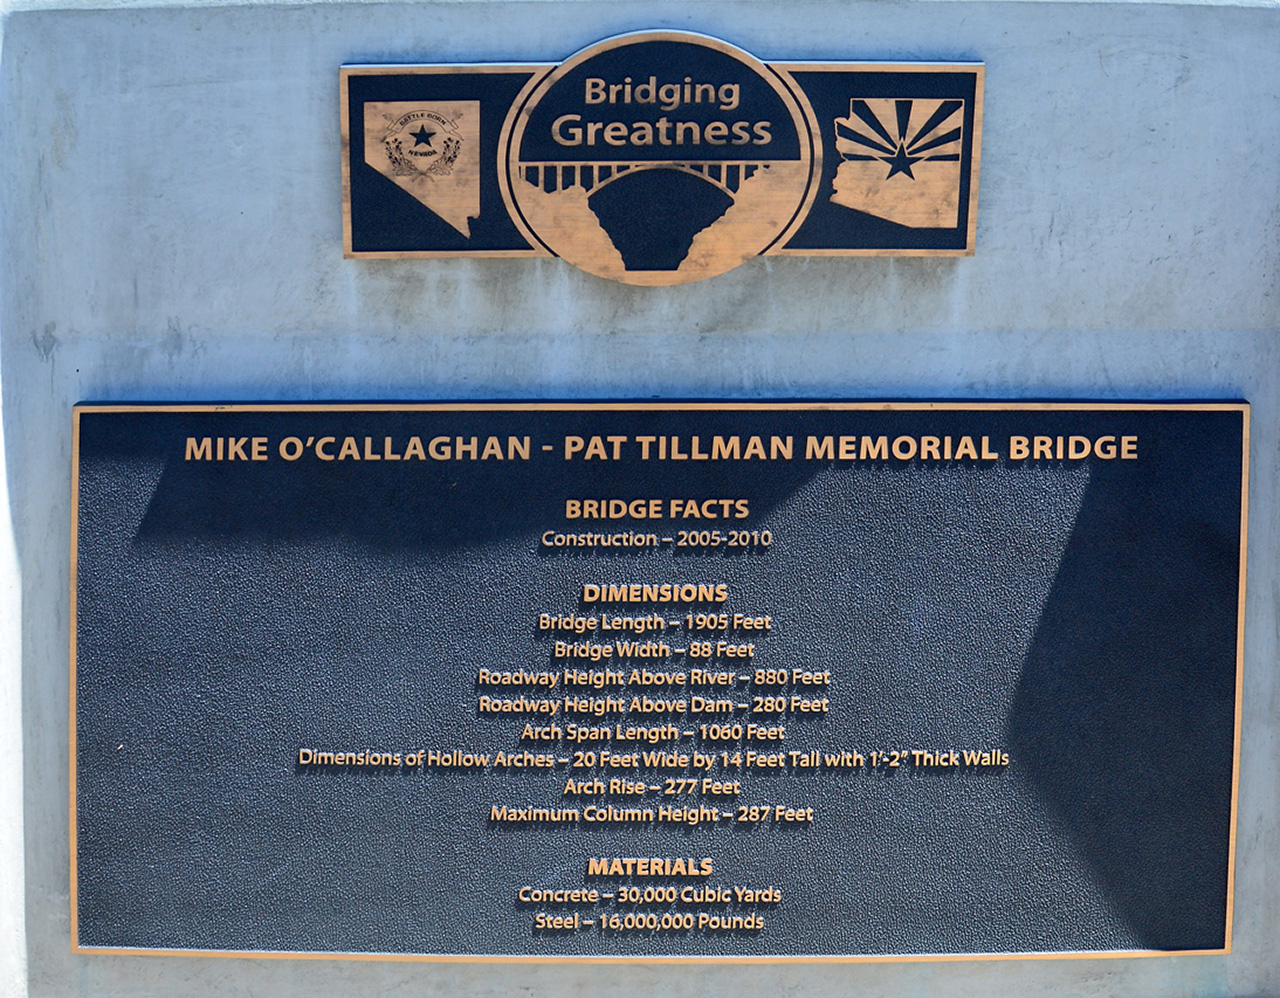 2016-05-27, 002, Mike O'Callaghan - Pt Tillman Bridge